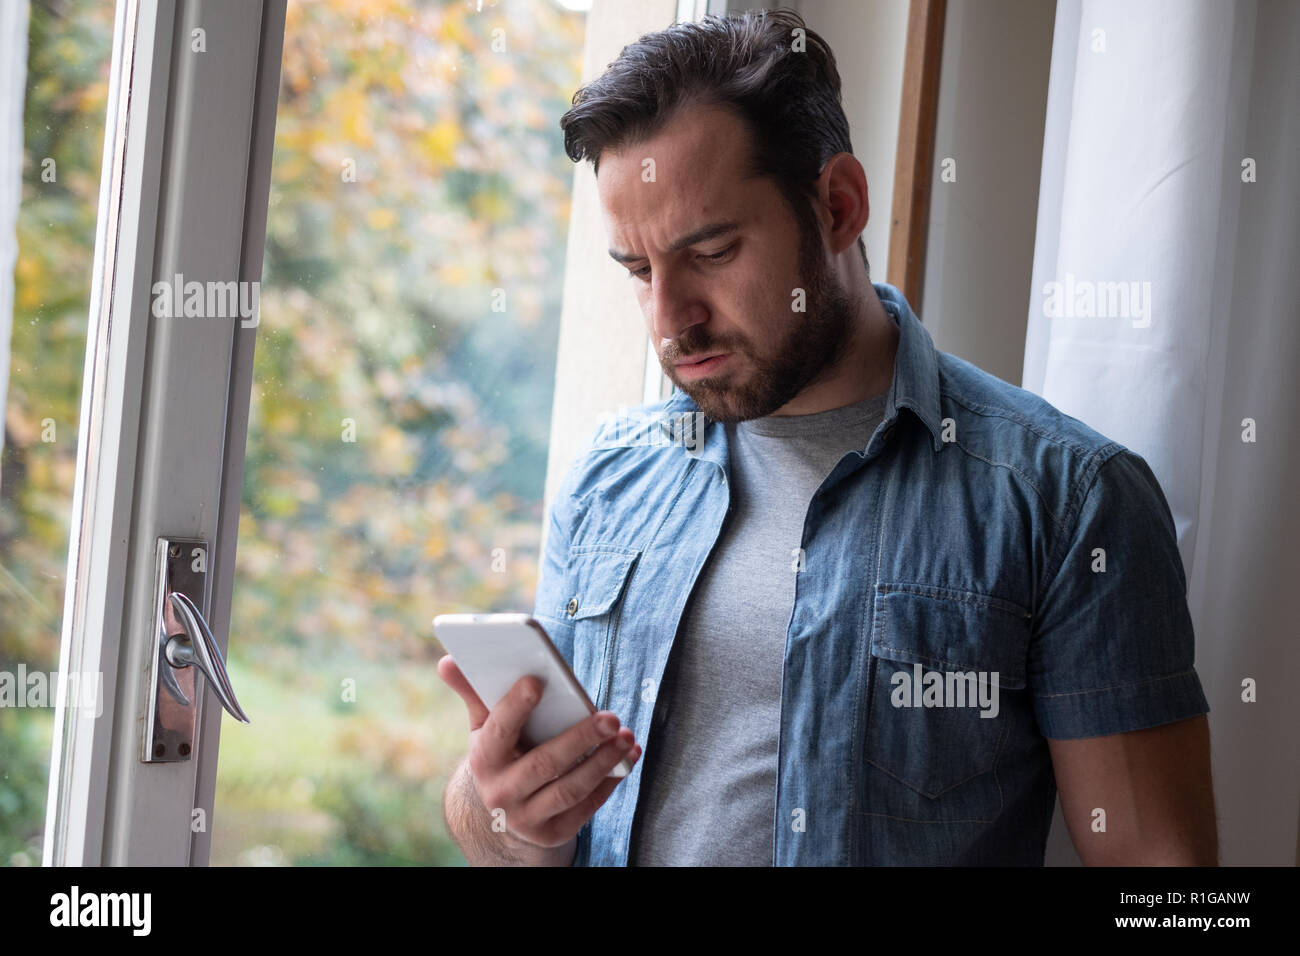 Preocupado hombre viendo smartphone y mensaje en espera Foto de stock